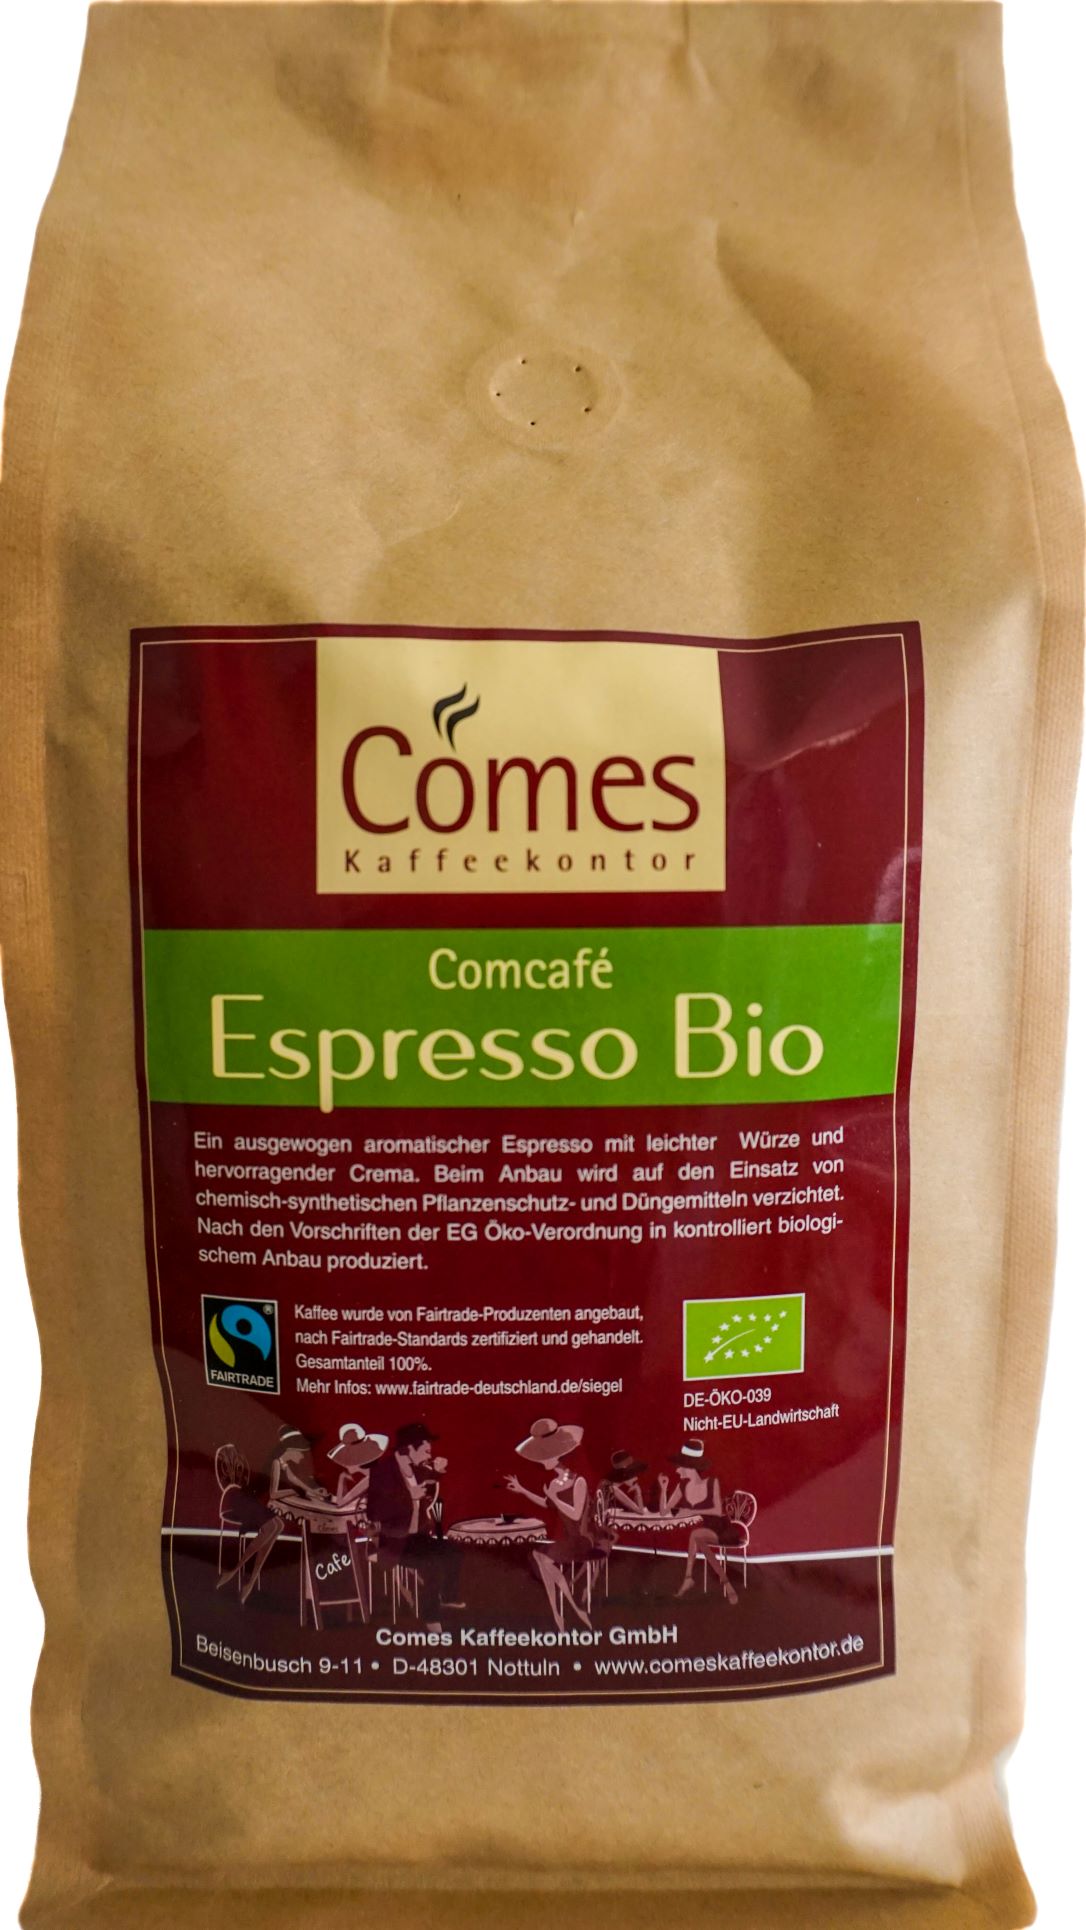 Comcafé Espresso Bio FairTrade